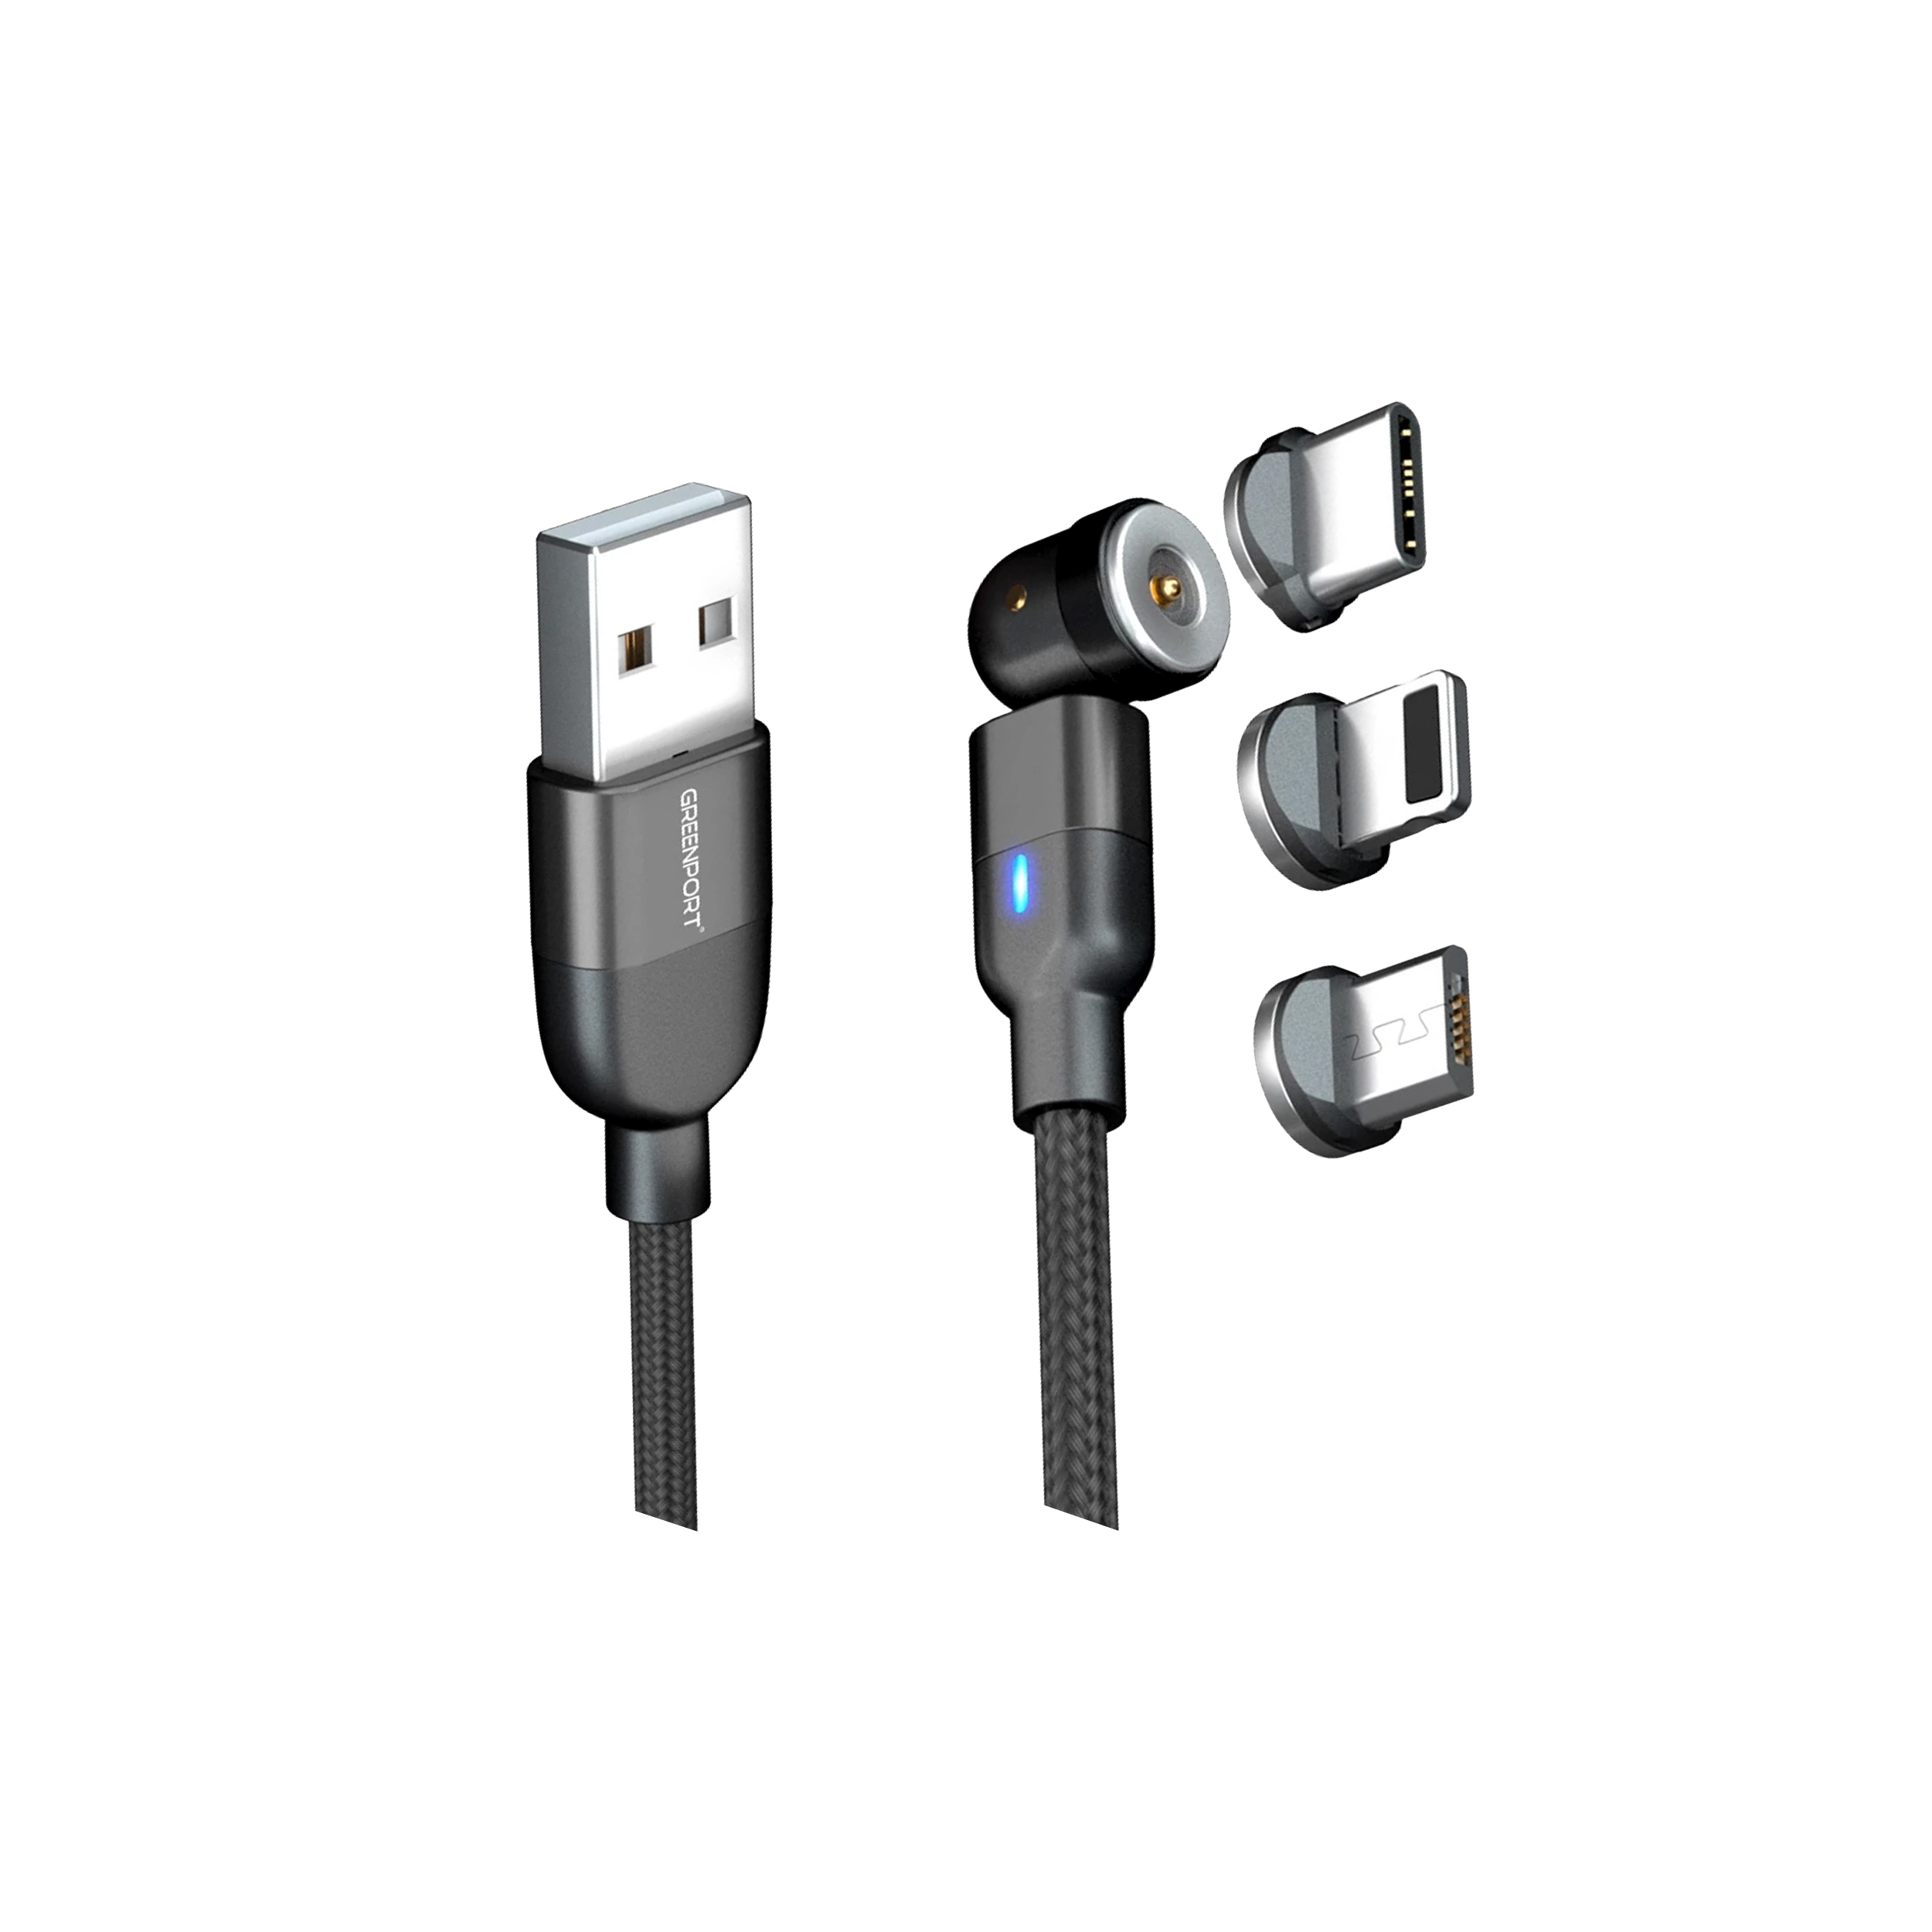 آنباکس کابل تبدیل USB به لایتنینگ/USB-C/microUSB گرین پورت مدل G1S طول 1متر در تاریخ ۱۳ دی ۱۳۹۹